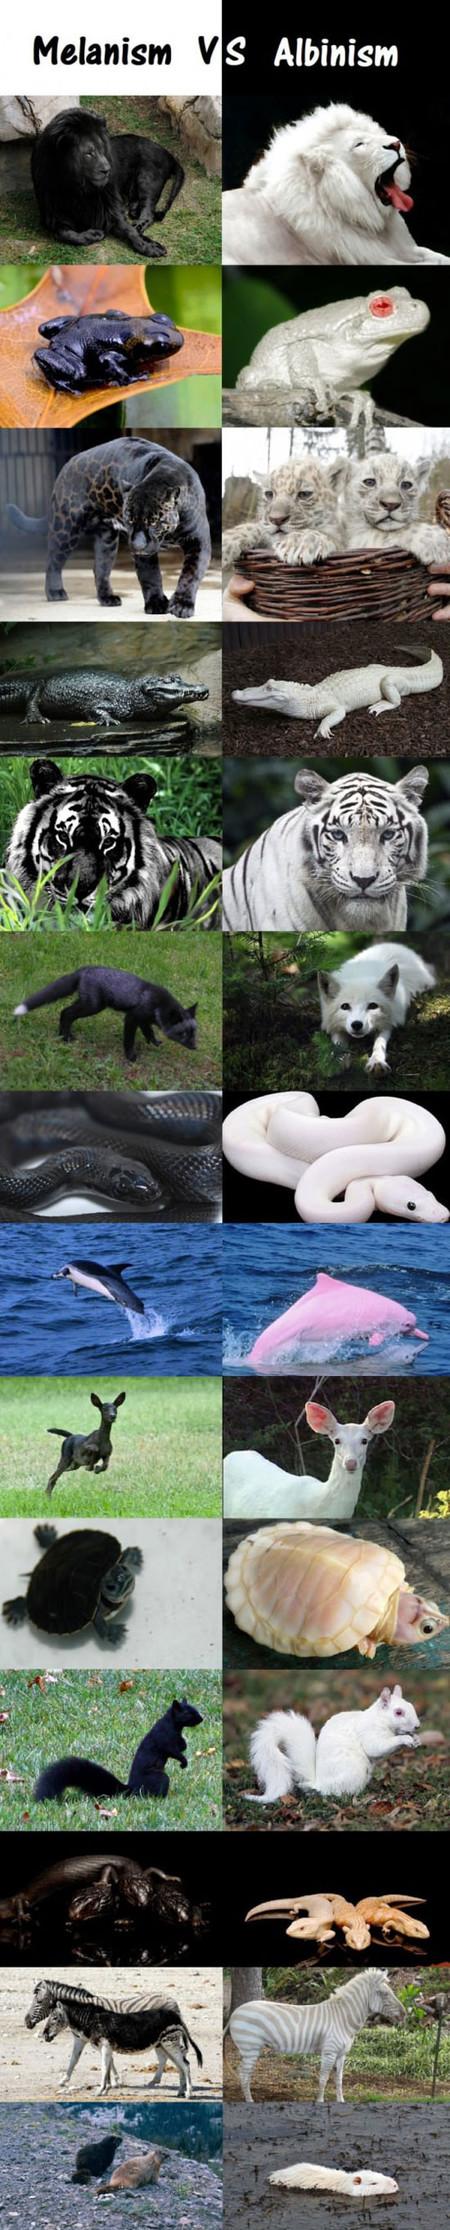 Melanism+Vs.+Albinism+In+The+Animal+Kingdom